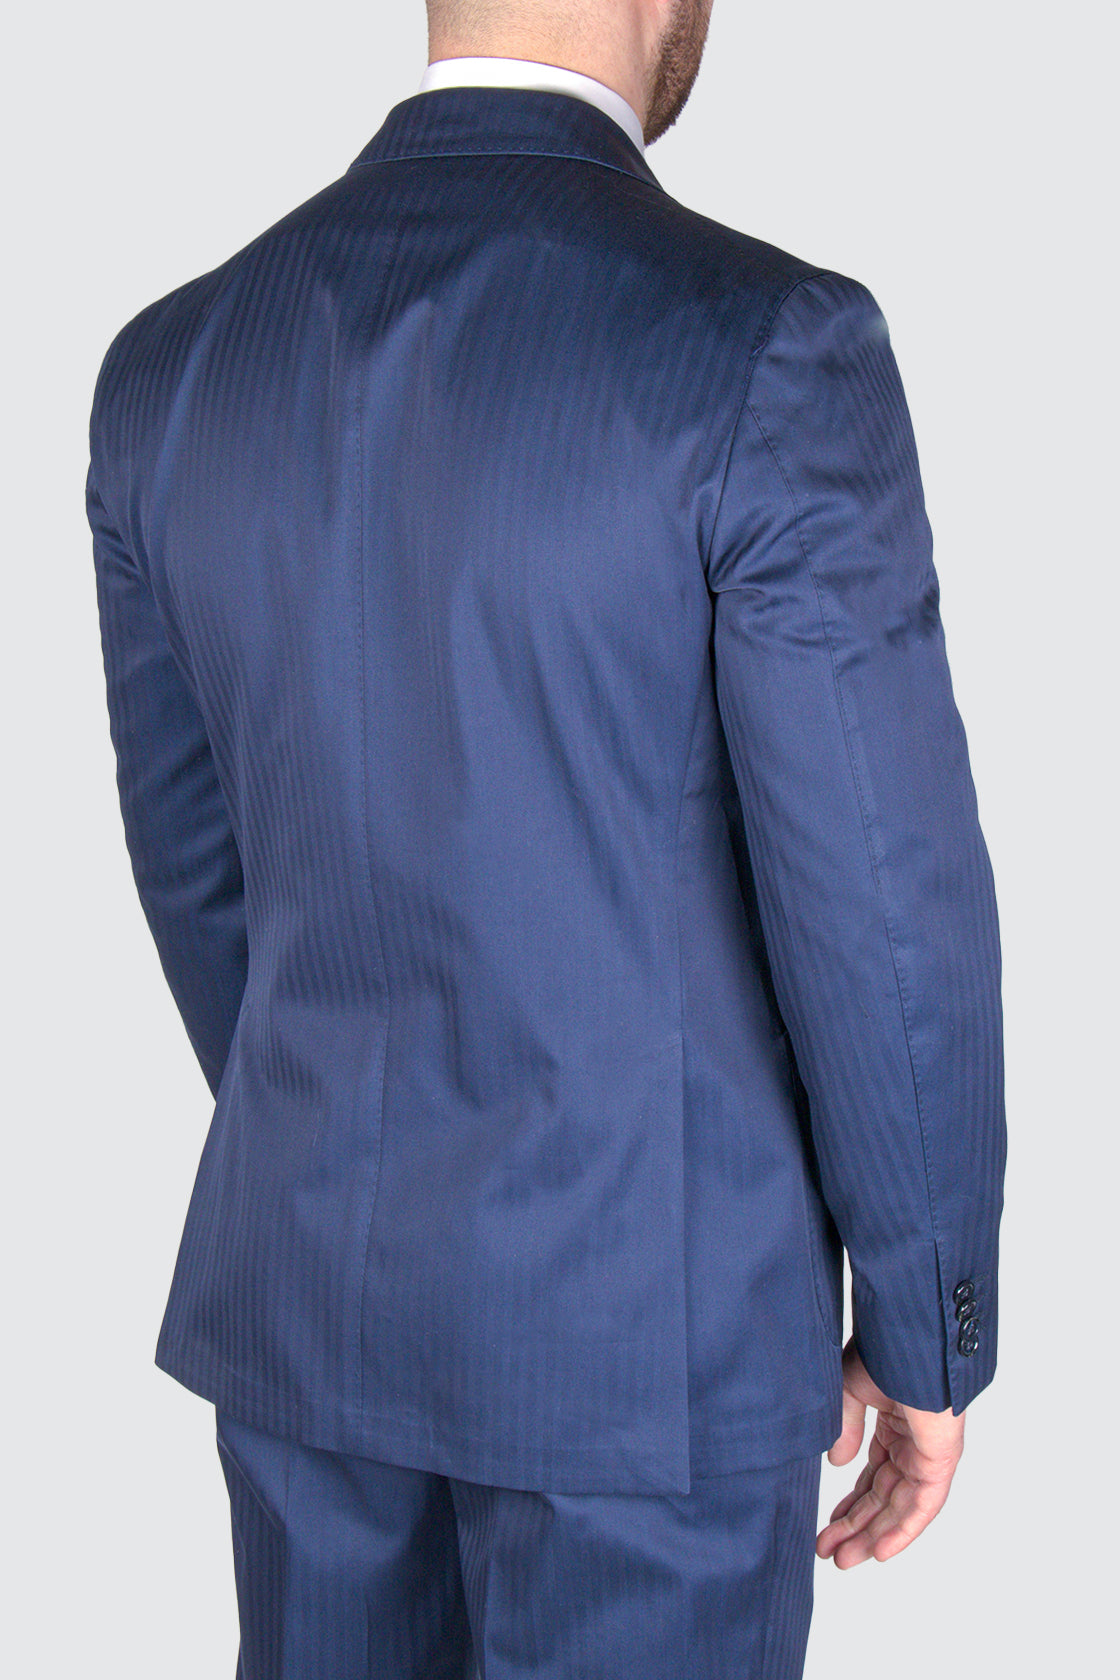 L.B.M. 1911 Cotton Suit Blue